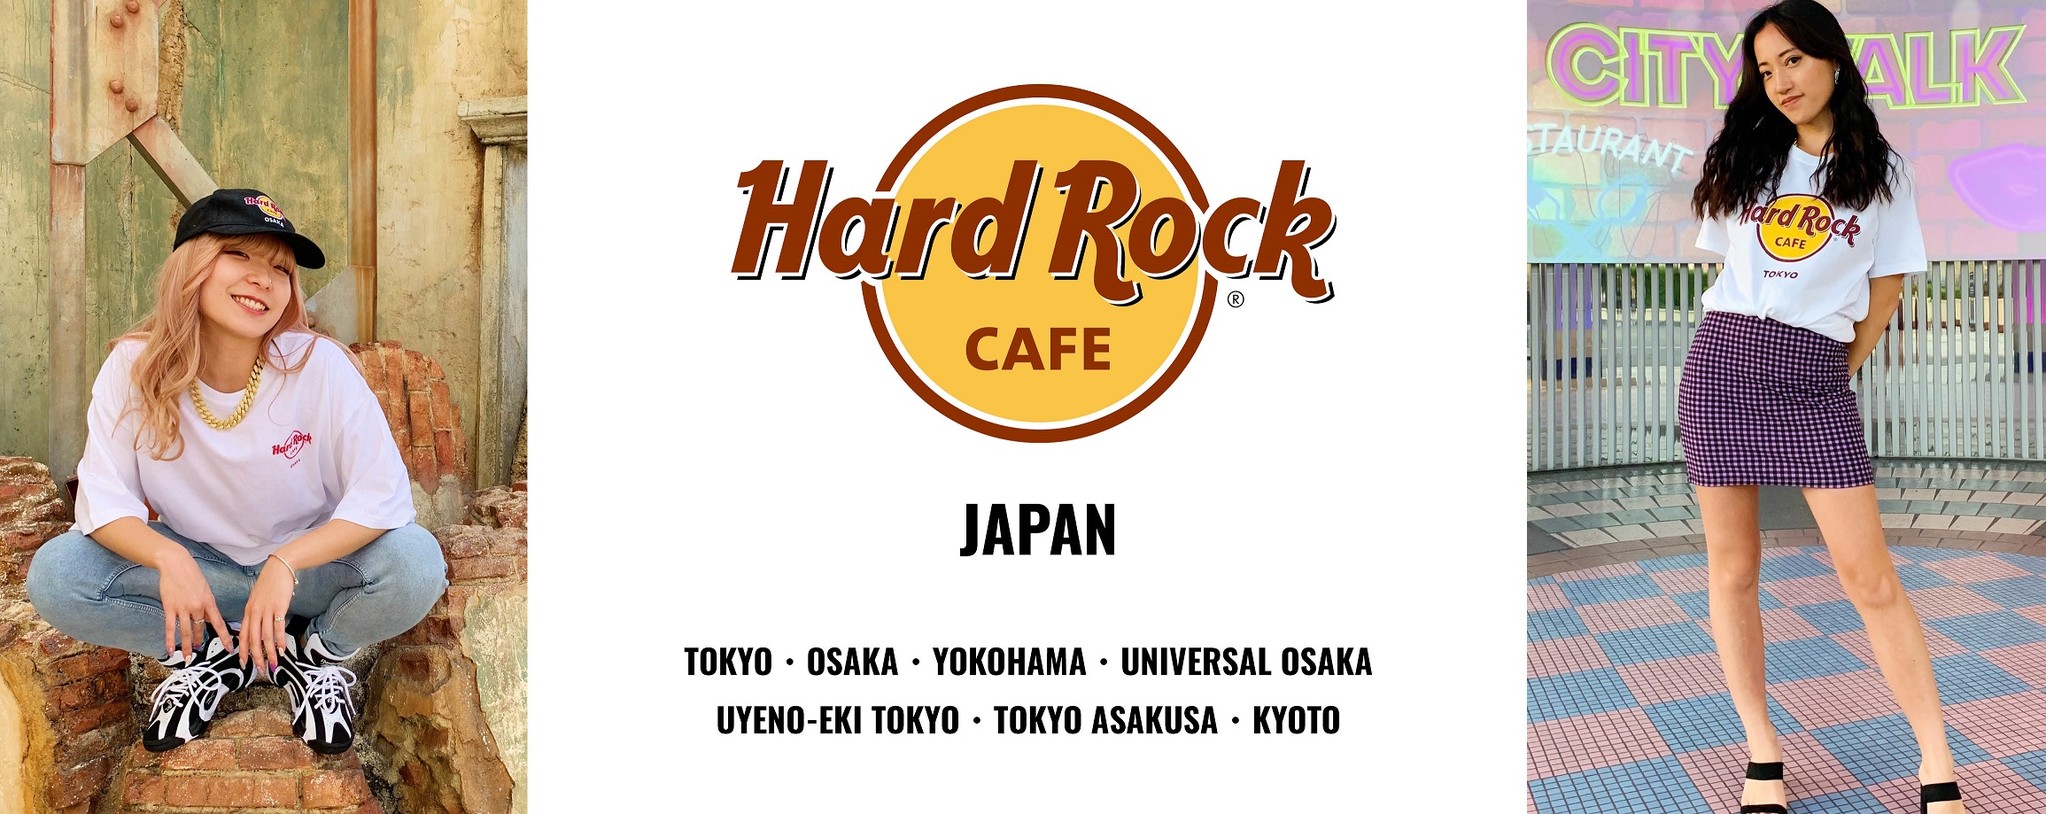 17 HardRockCAFE ハードロックカフェ トランプ ポーカーサイズ 【時間指定不可】 【時間指定不可】